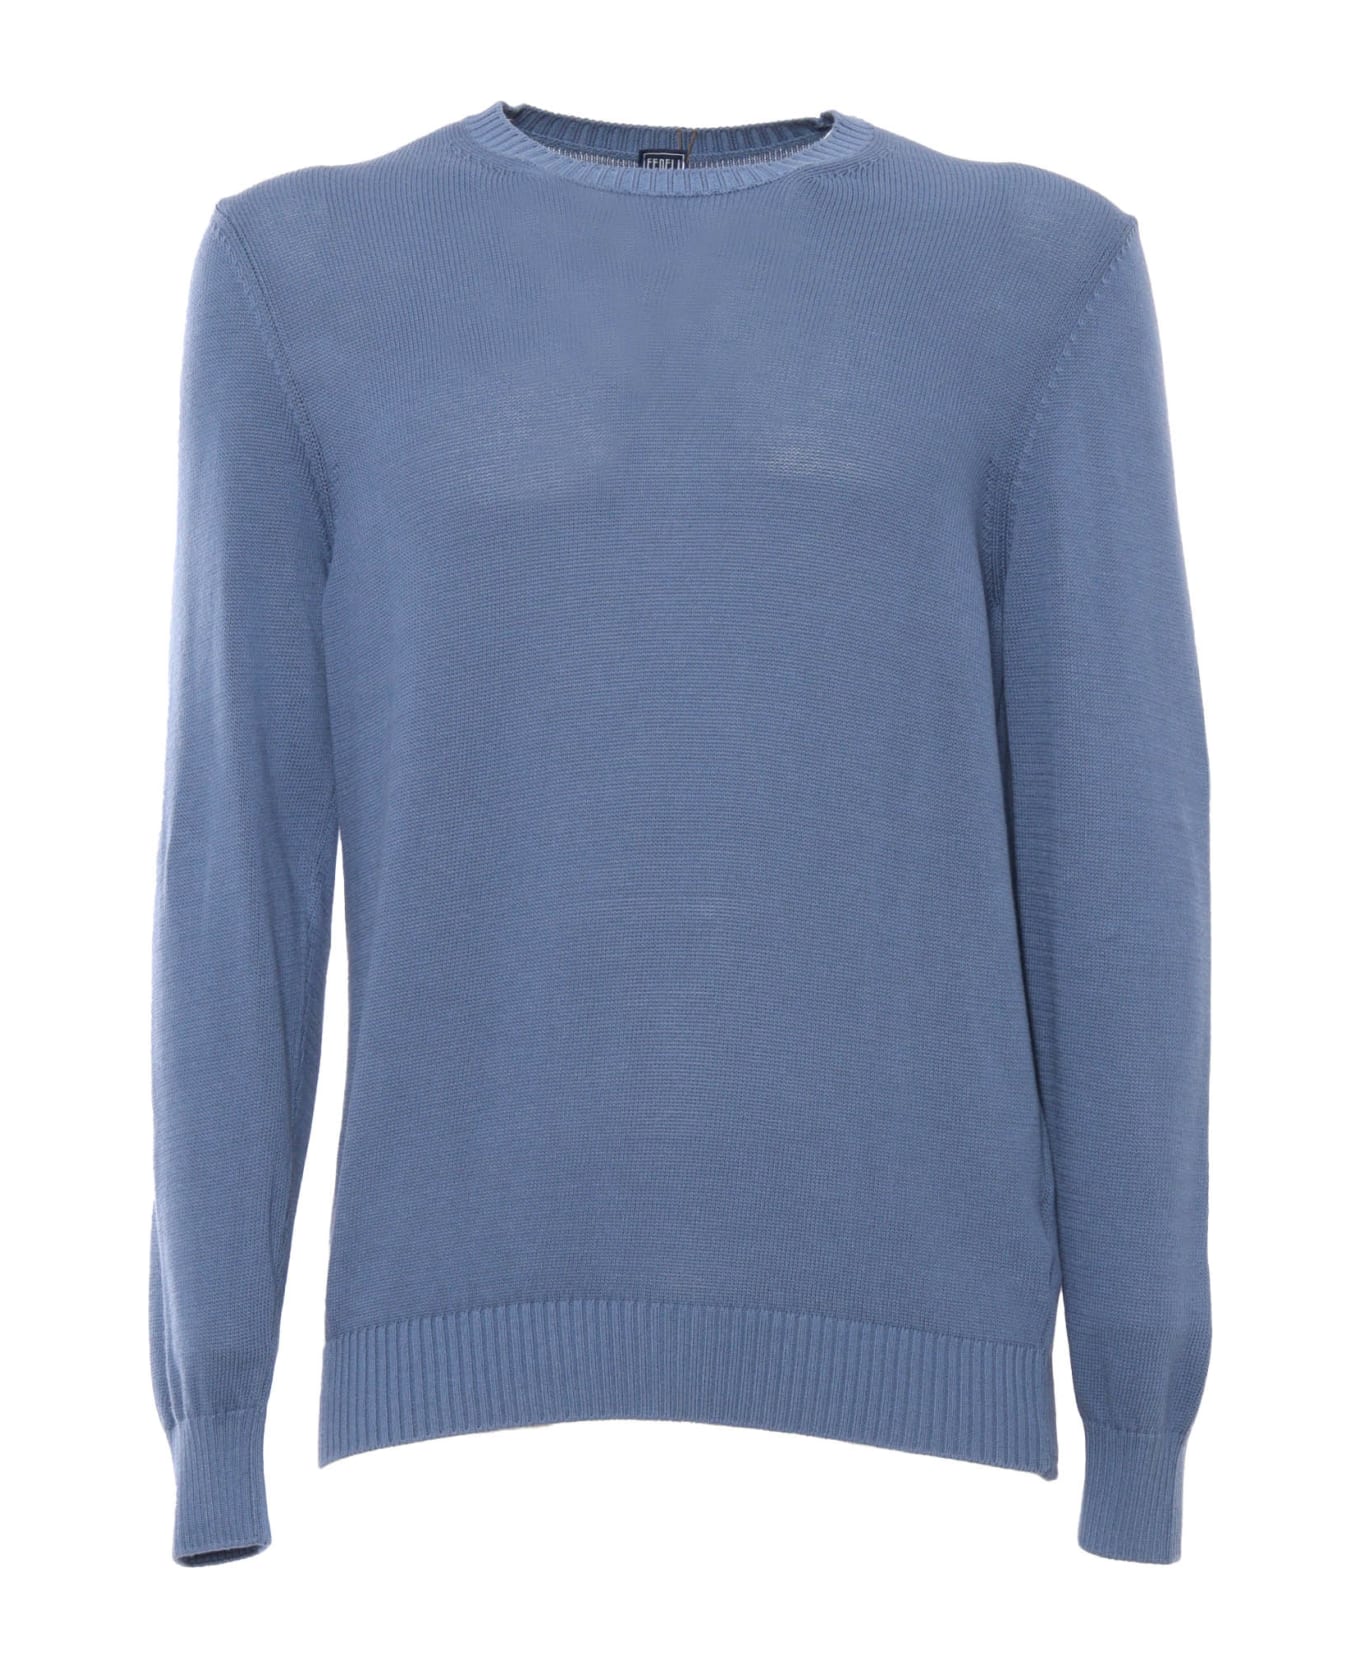 Fedeli Light Blue Sweater - LIGHT BLUE ニットウェア